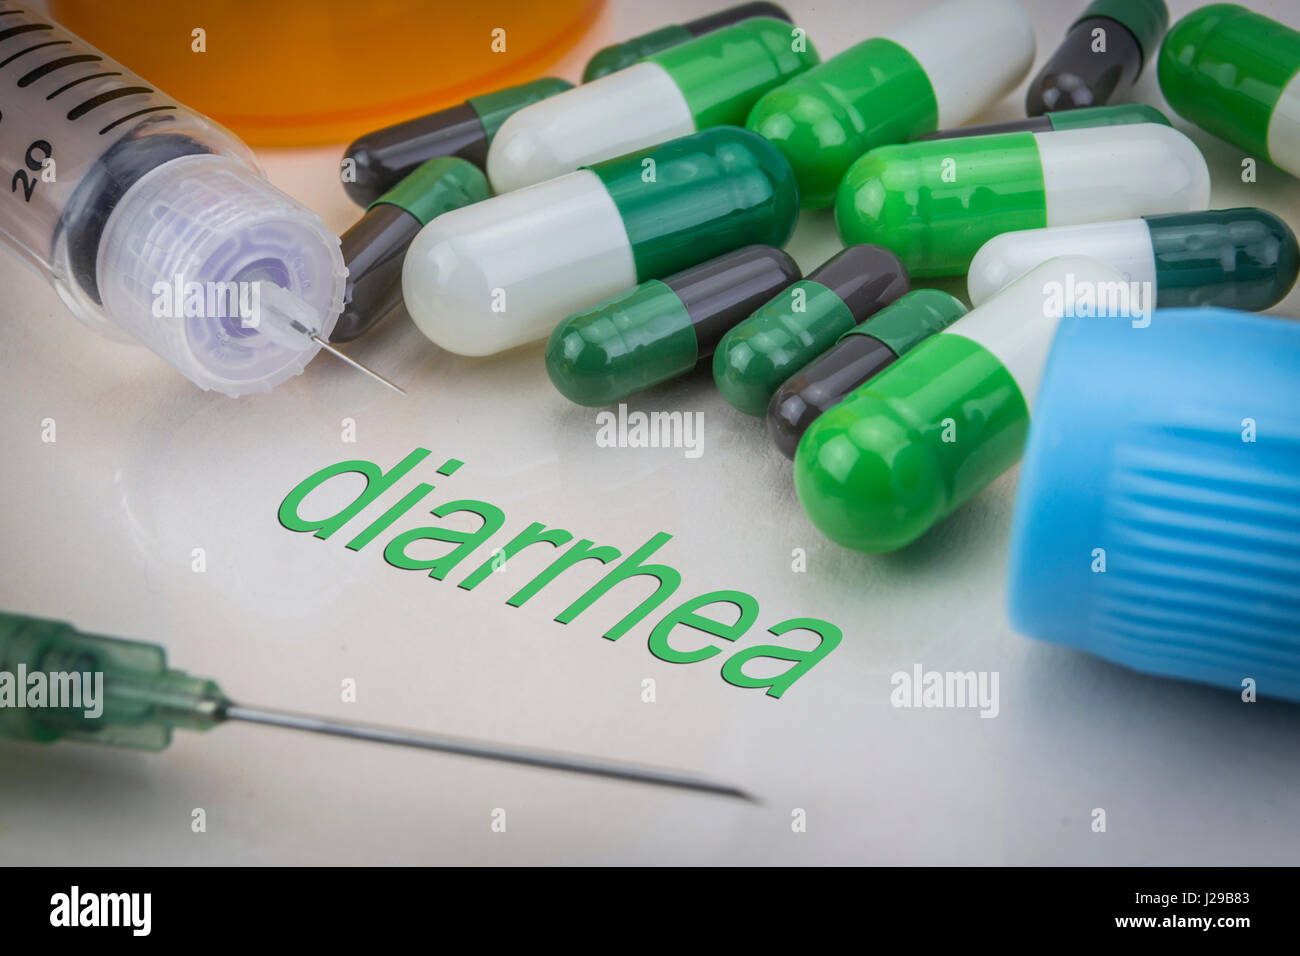 Diarrea, medicinali e siringhe come concetto di trattamento ordinario la salute Foto Stock